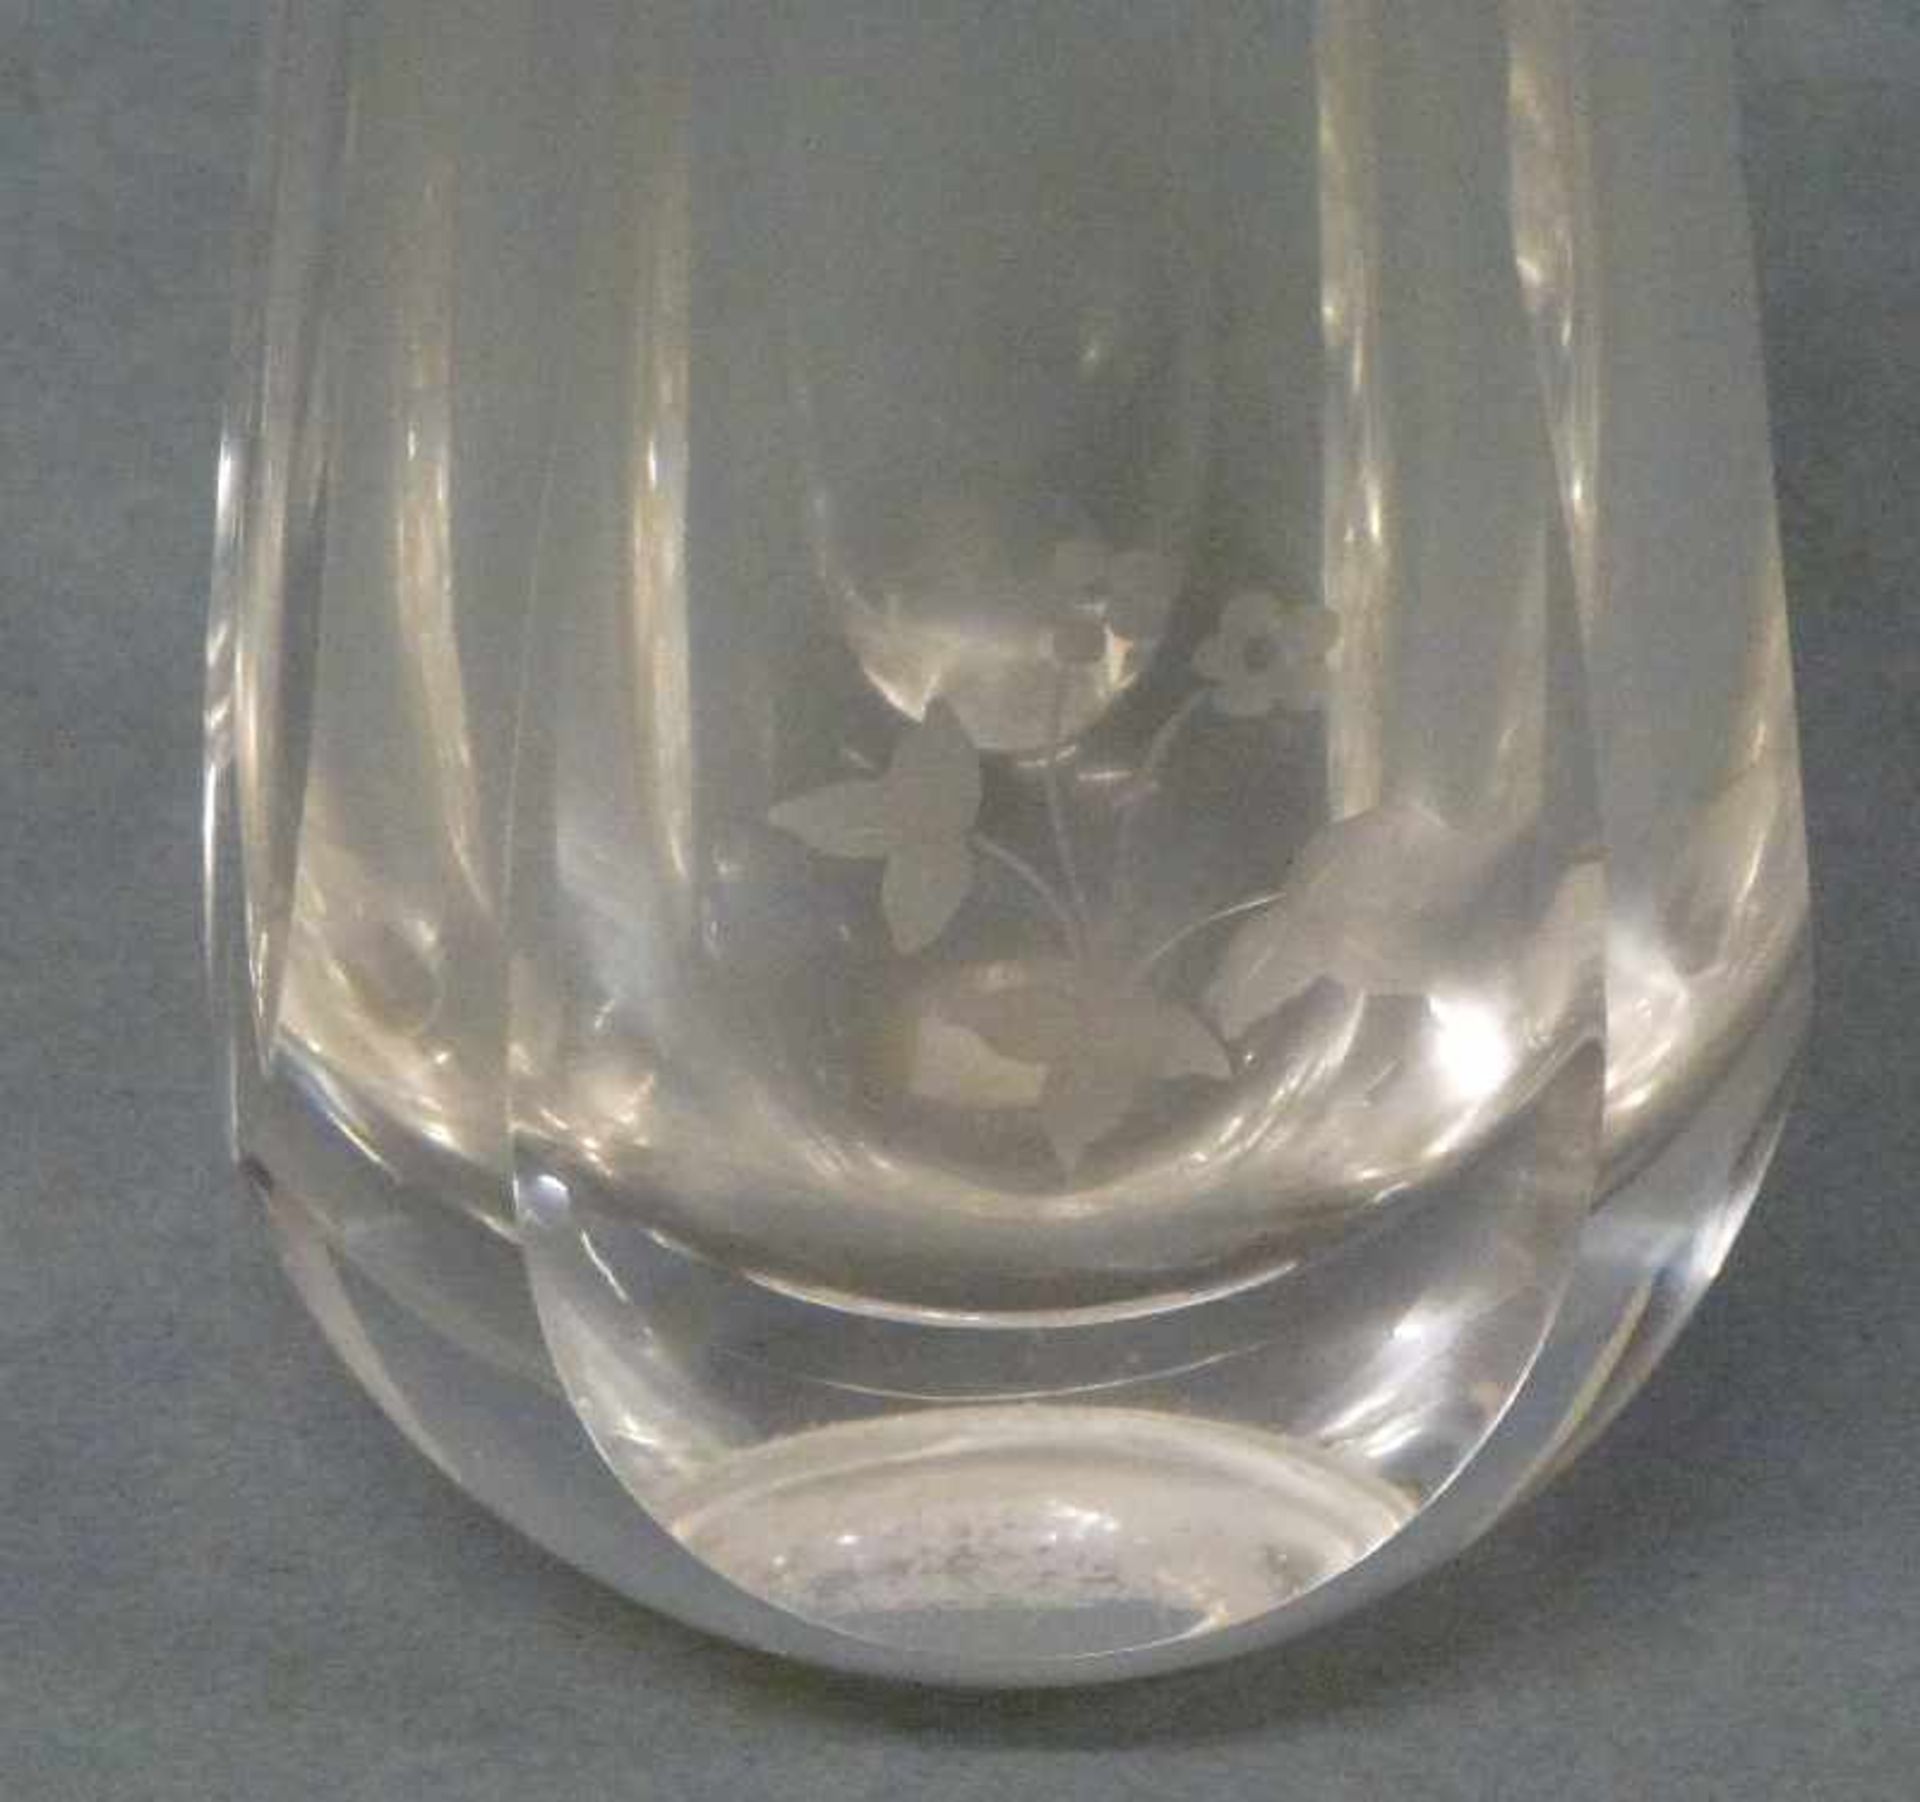 Vase tropfenförmig, klar, flächig geschliffen, Blume im Mattschliff, Ritzsign., H 15 cm - Bild 2 aus 3